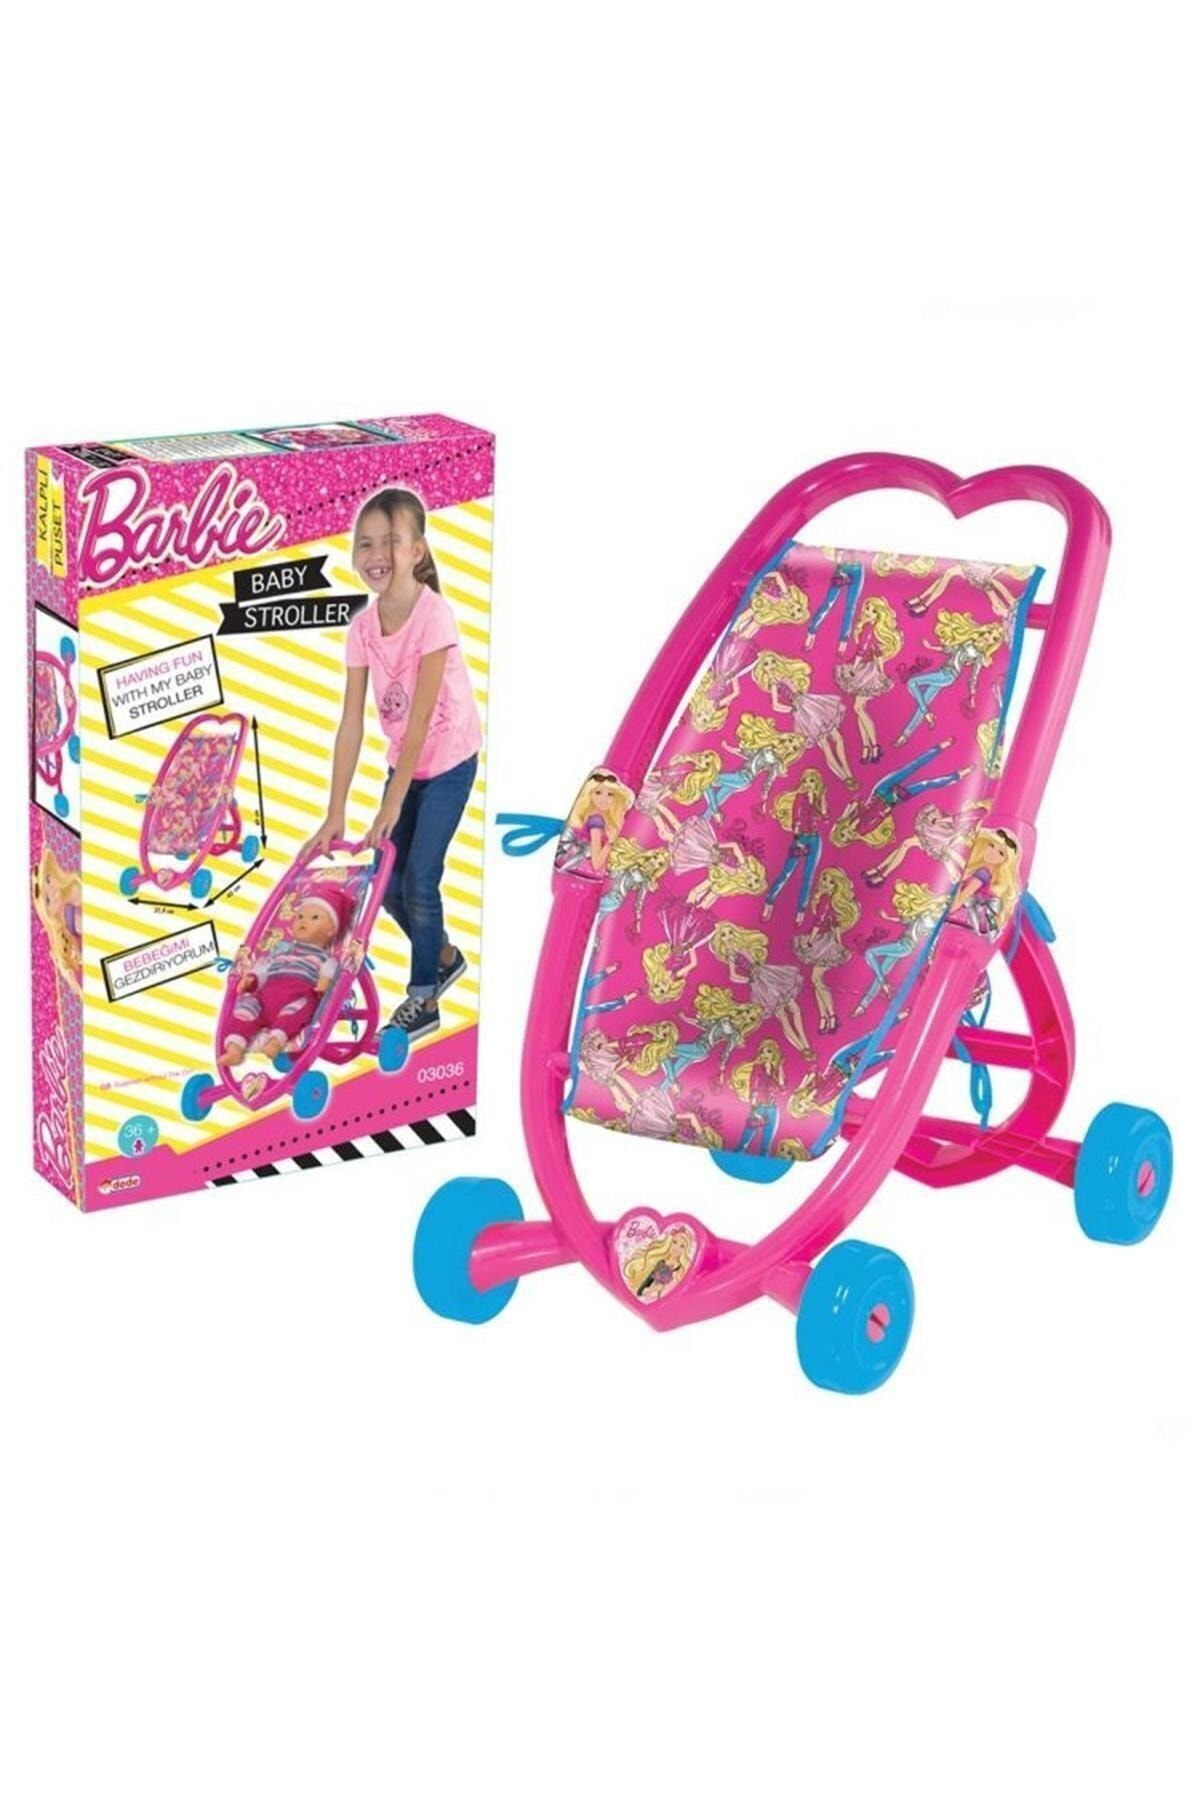 ÖFA TOYS Marka: Dede Barbie Kalpli Puset Kategori: Bebek & Aktivite Oyuncakları